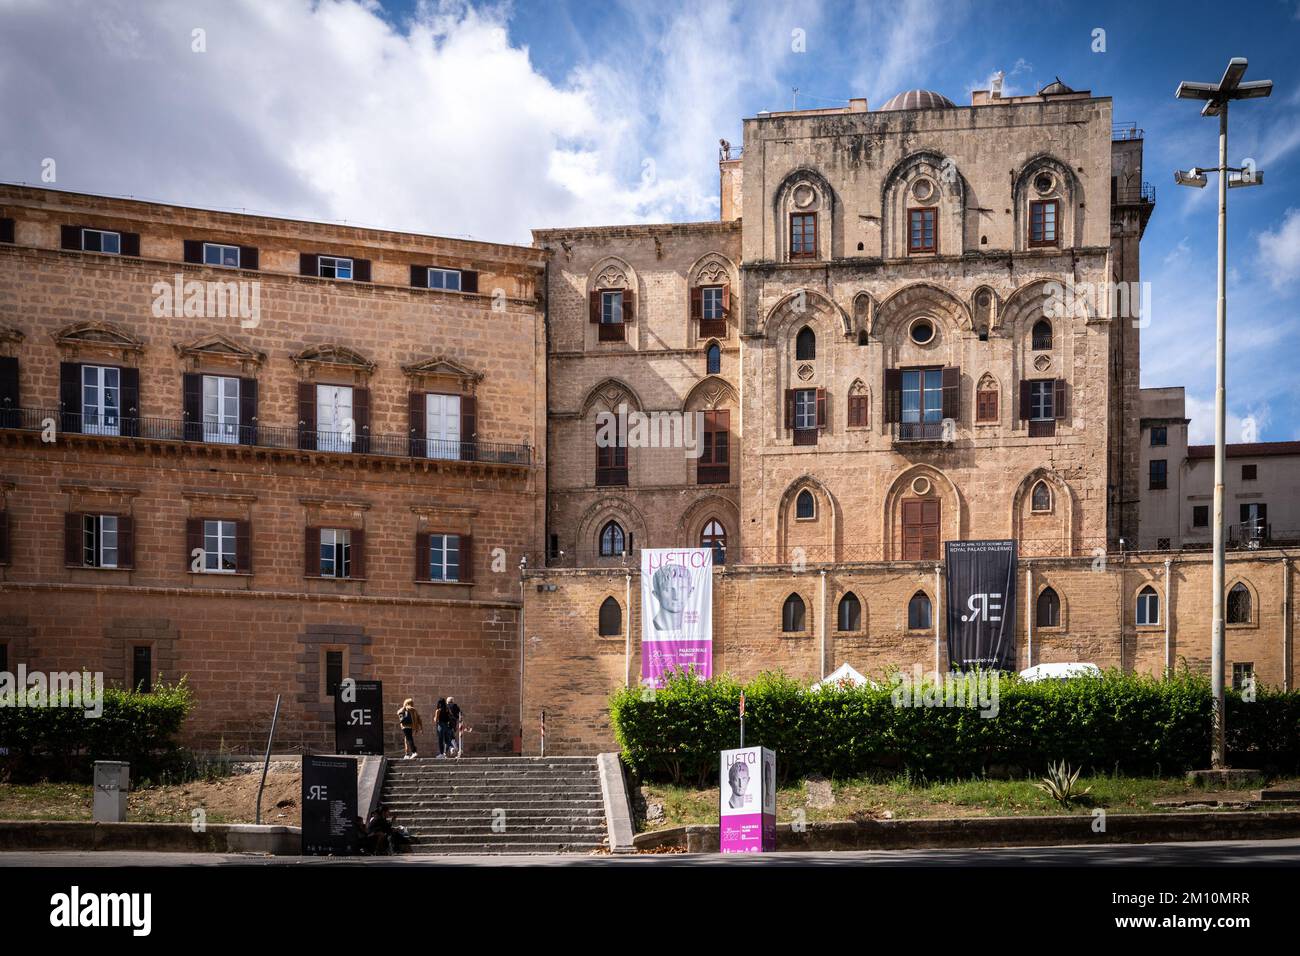 Il Palazzo reale, Palazzo dei Normanni, fu utilizzato dai Normanni come luogo da cui governare la regione. All'interno si trova la Cappella Palatina. Palermo. Foto Stock